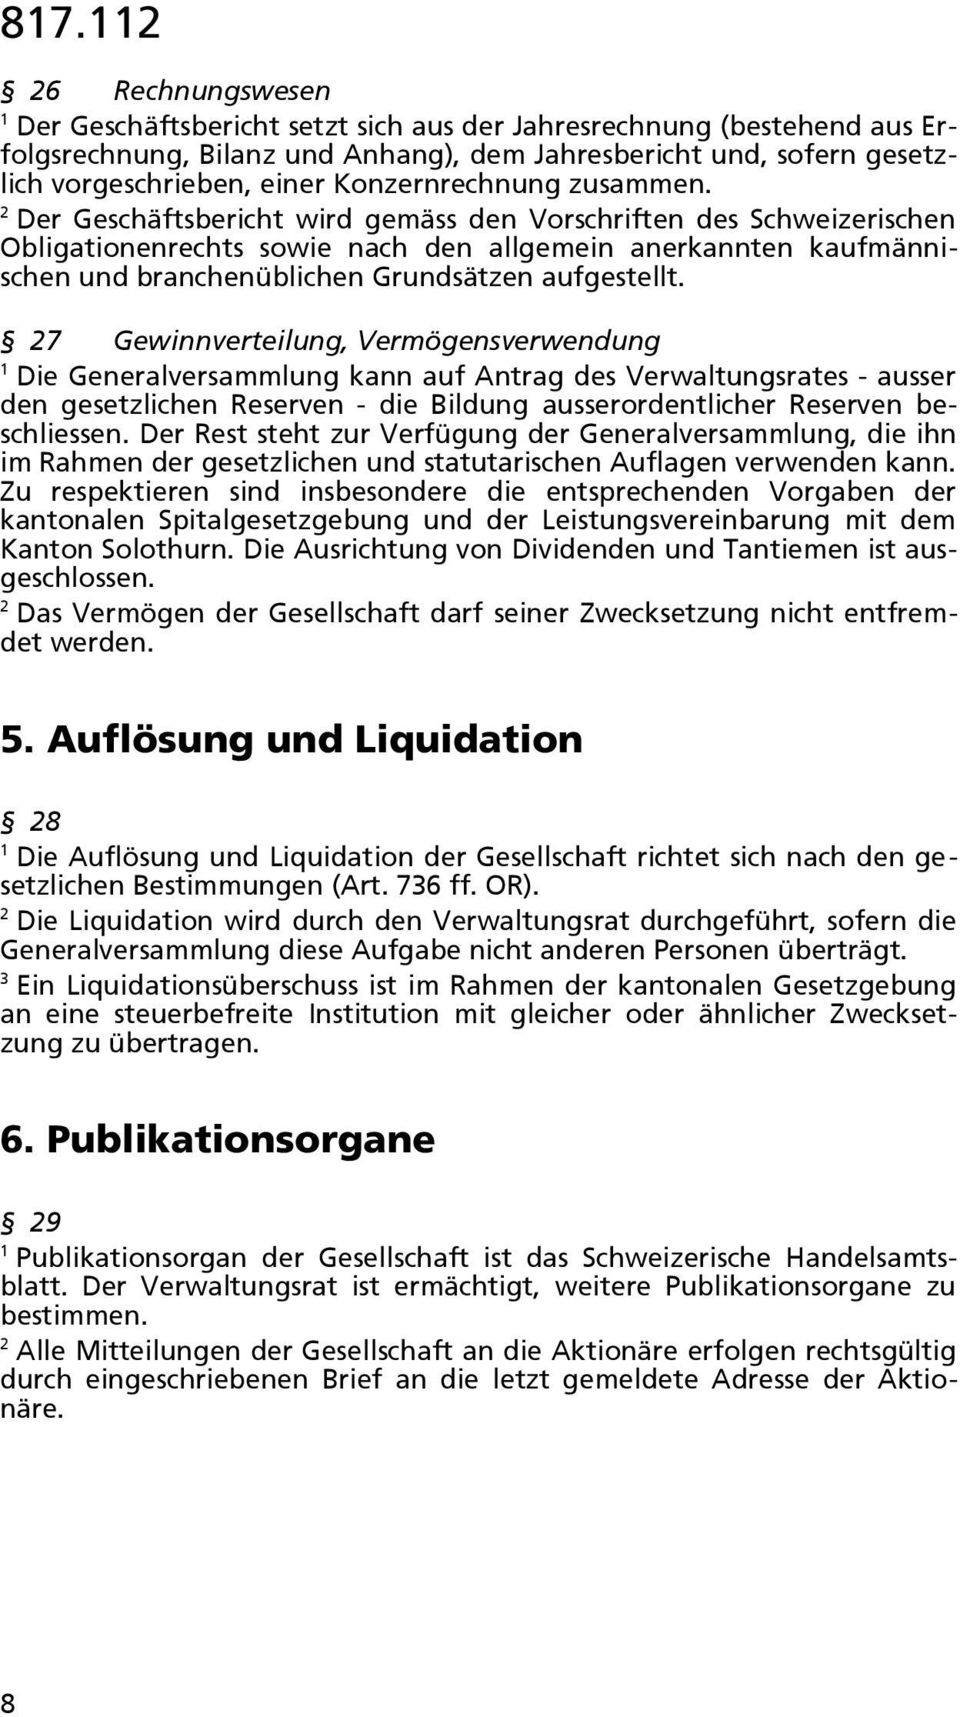 Der Geschäftsbericht wird gemäss den Vorschriften des Schweizerischen Obligationenrechts sowie nach den allgemein anerkannten kaufmännischen und branchenüblichen Grundsätzen aufgestellt.